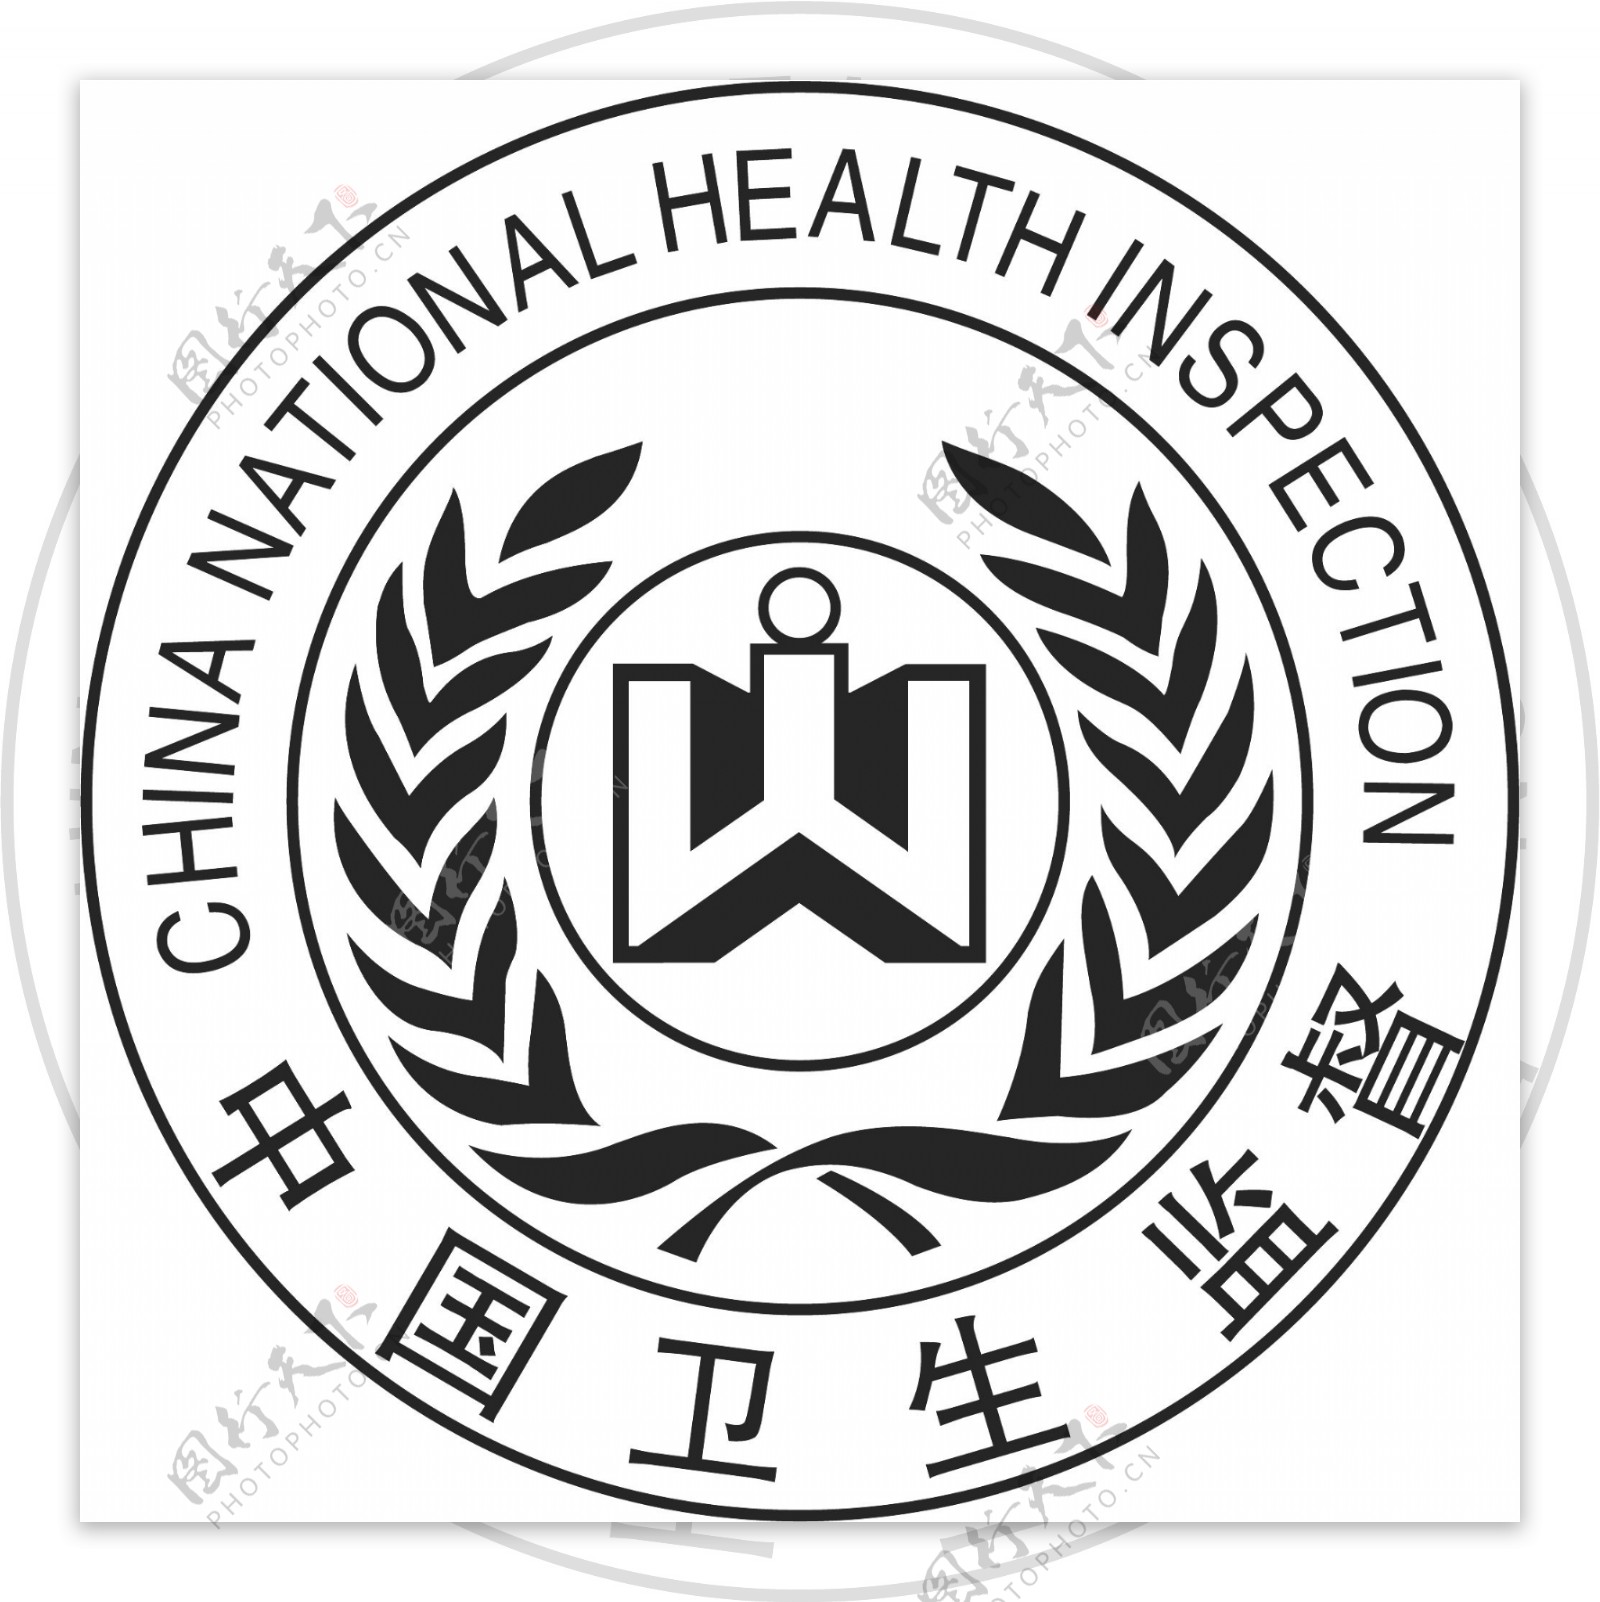 中国卫生监督行政管理标志